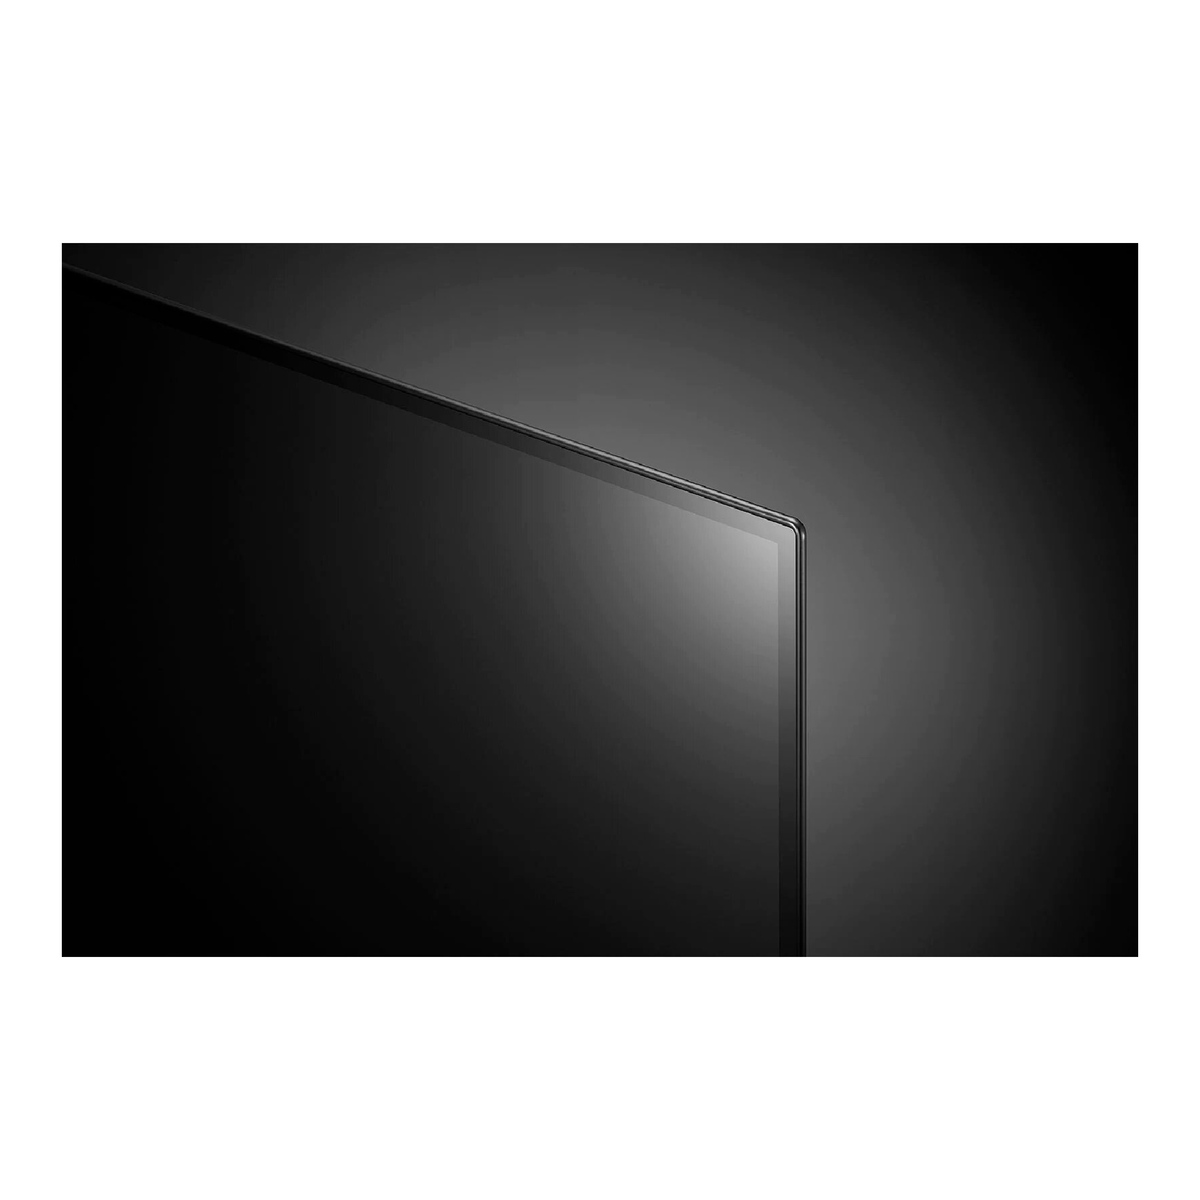 ال جي تلفزيون ذكي OLED مقاس 65 بوصة من سلسلة A1، تصميم شاشة سينمائية 4K Cinema HDR يعمل بنظام webOS وبتقنية تعتيم ThinQ AI